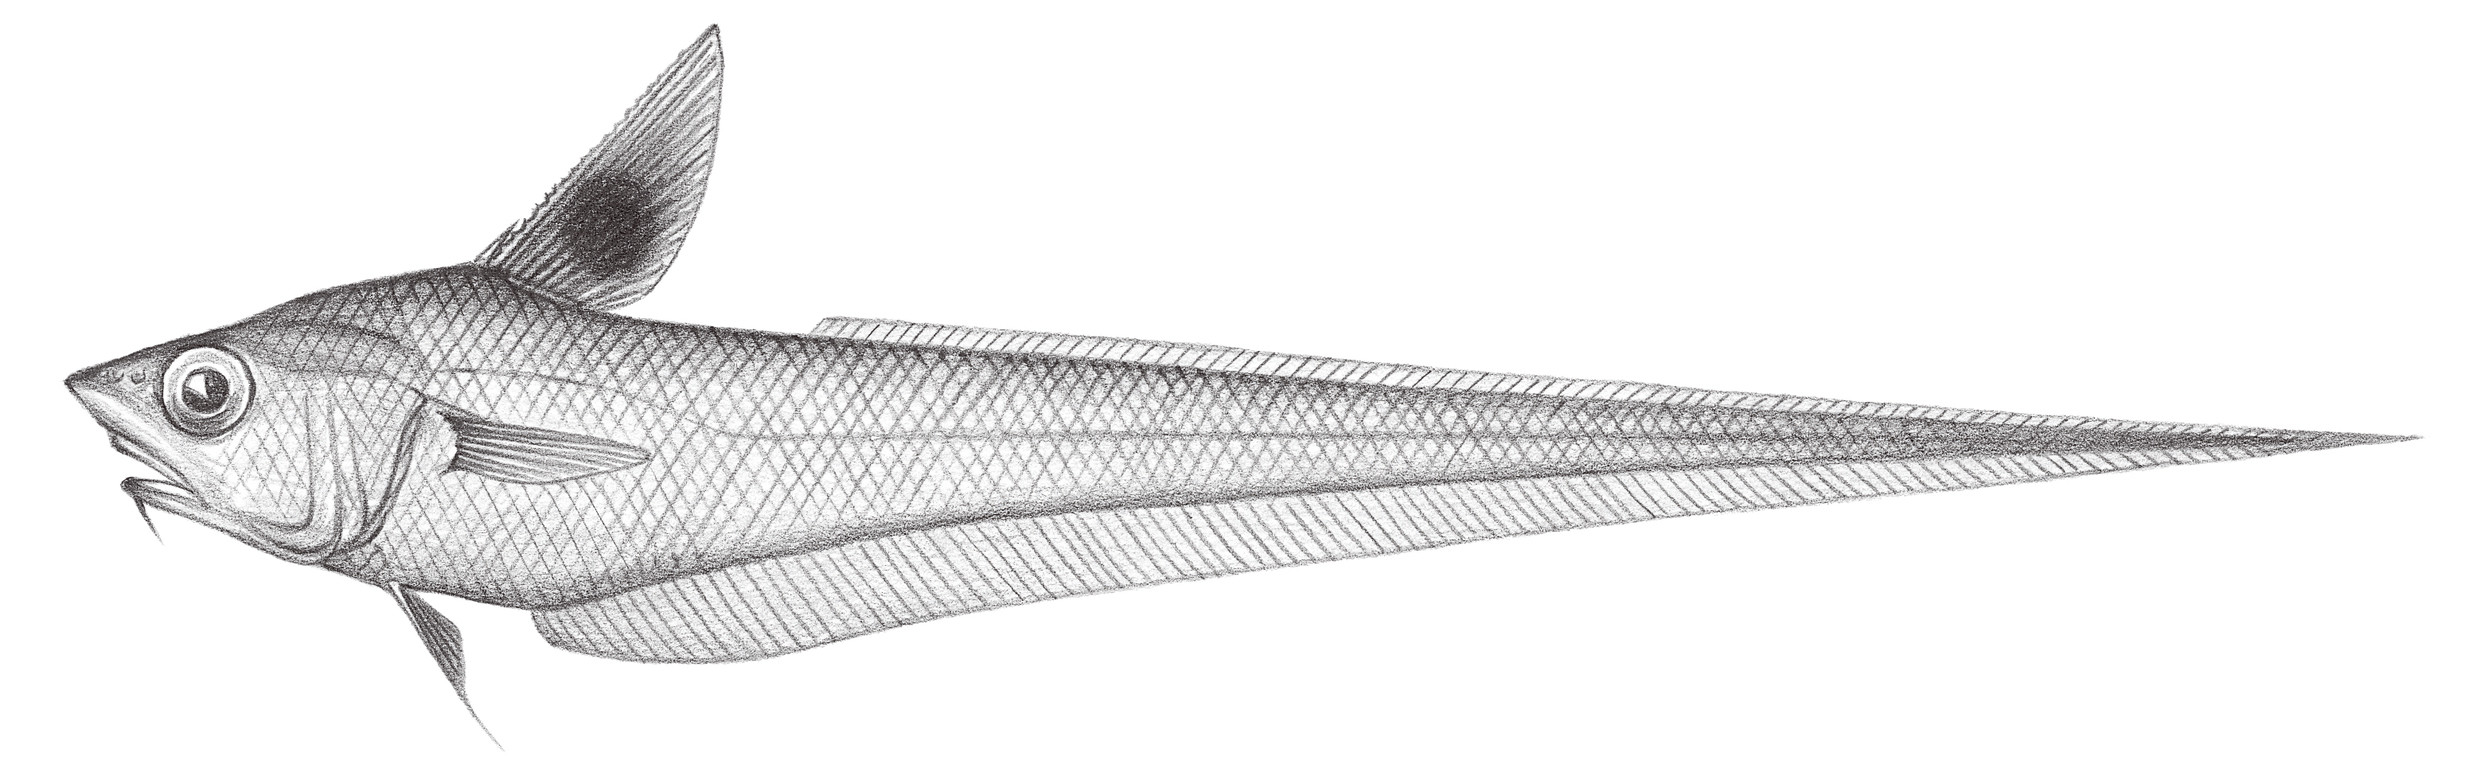 597.	黑背鰭凹腹鱈 Ventrifossa nigrodorsalis Gilbert & Hubbs, 1920